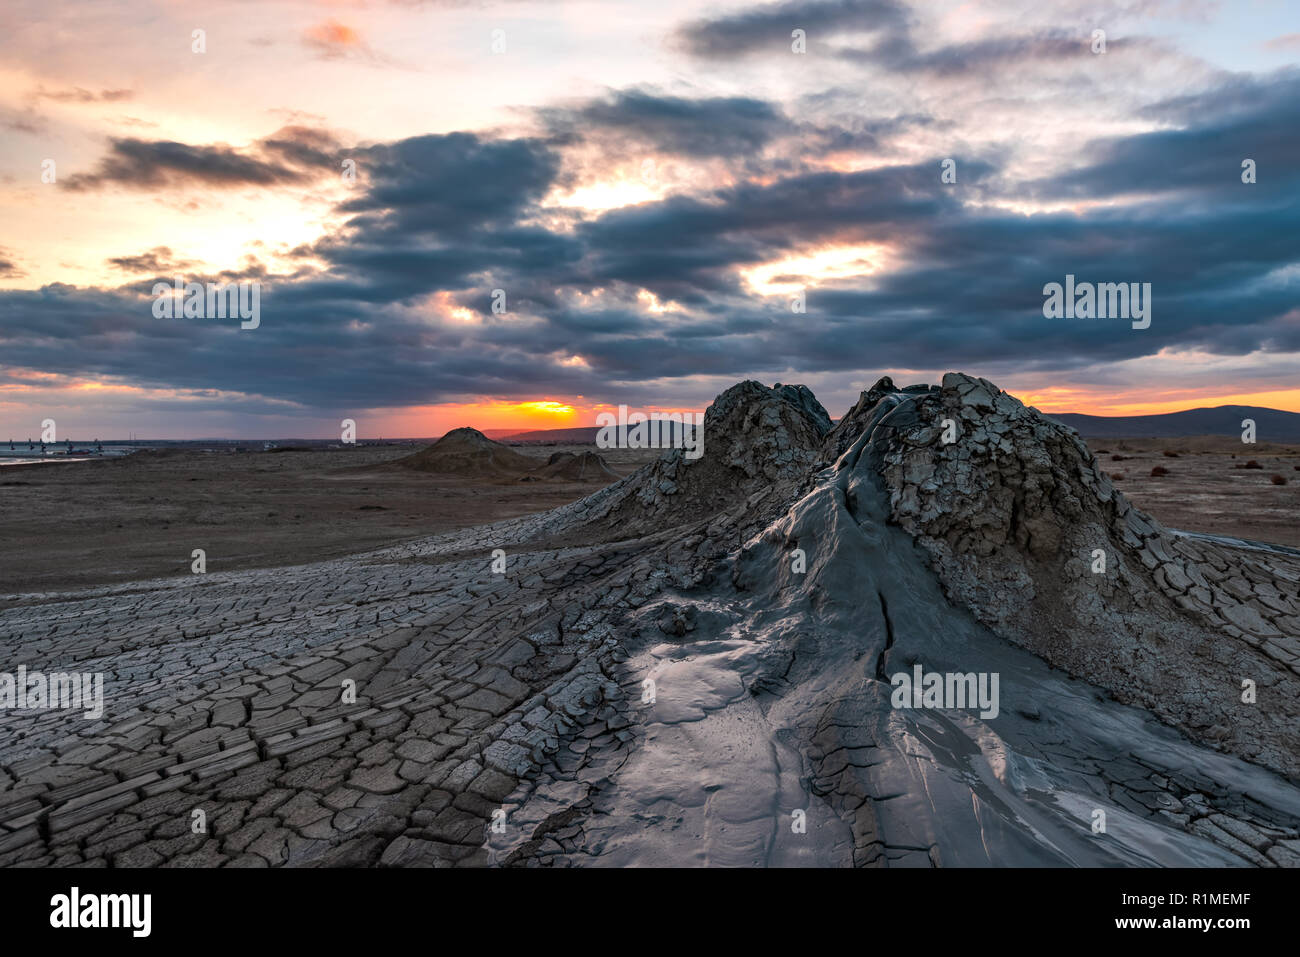 Mud volcano at sunset,  amazing natural phenomenon Stock Photo